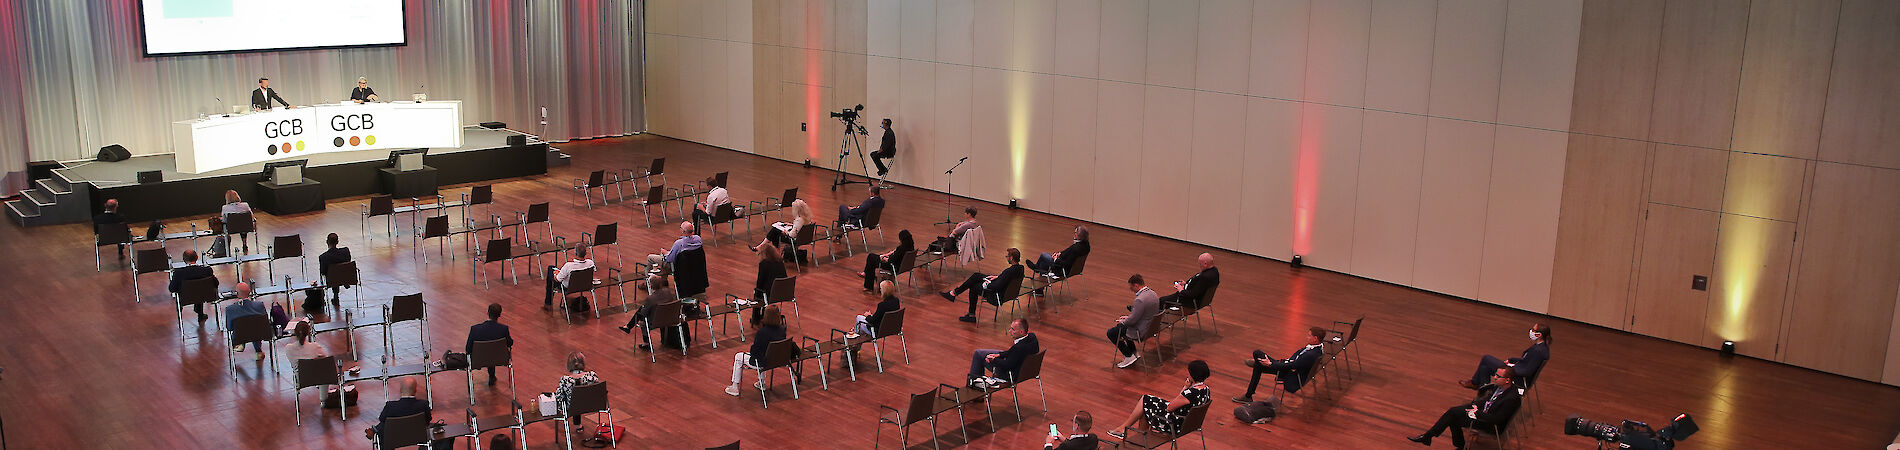 Ansicht eines Saals von oben, in dem ca, 30 Menschen mit großen Abständen auf Stühlen sitzen und nach vorne in Richtung einer Bühne mit Leinwand blicken.